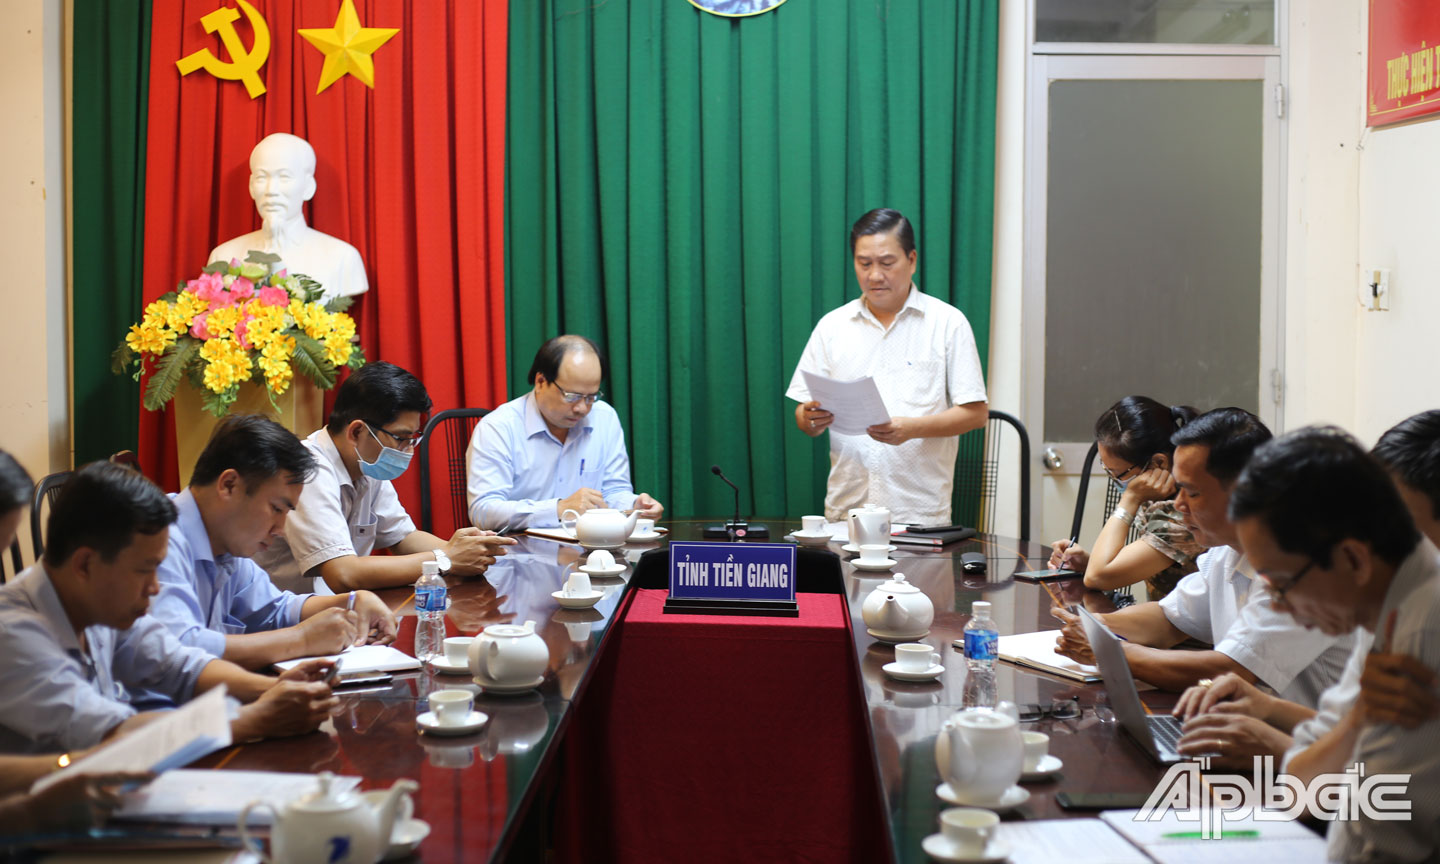 Phó Giám đốc Sở TT&TT tỉnh Tiền Giang Nguyễn Văn Vững rà soát lại công tác tổ chức.